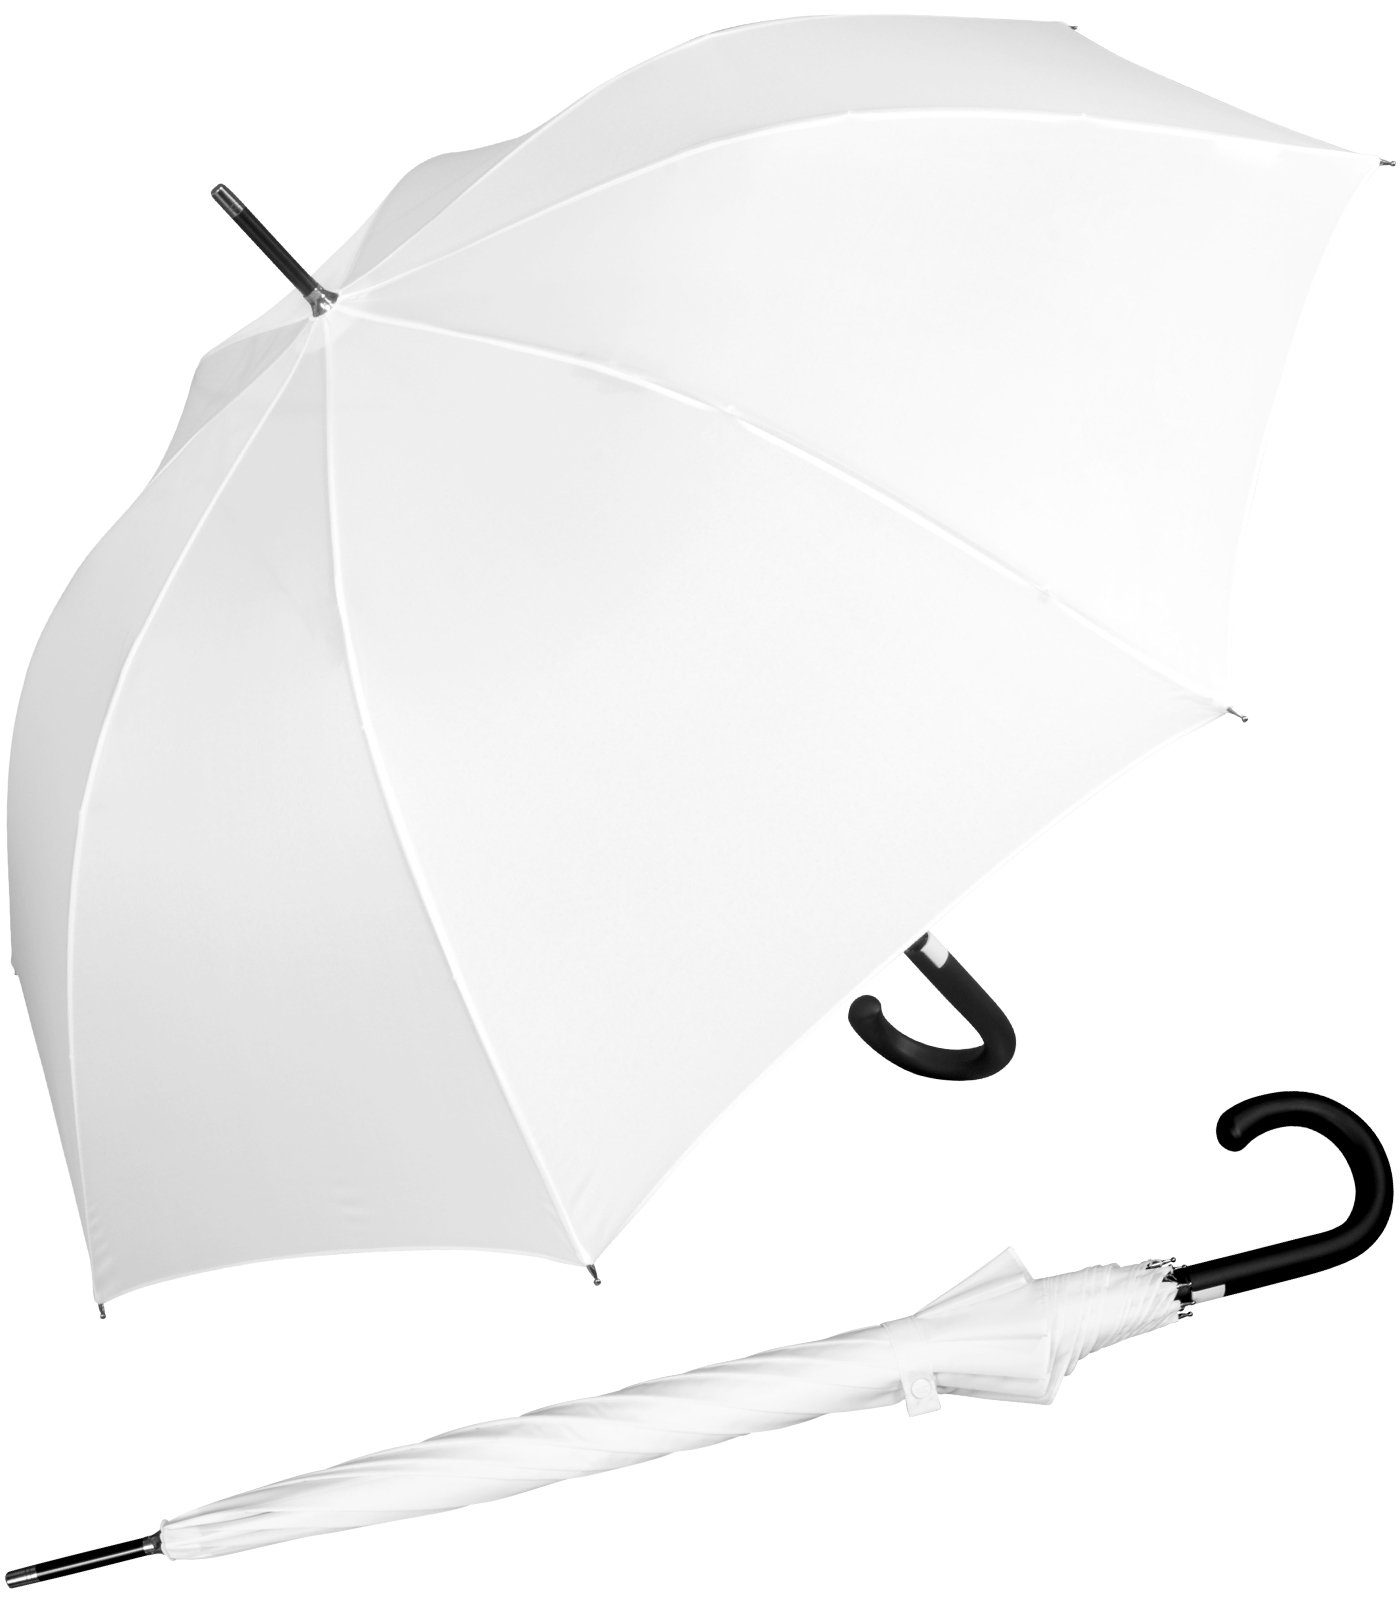 iX-brella Langregenschirm Fiberglas, XL 110 cm groß, stabil, mit Automatik, mit überschlagfähigem Dach - windproof - weiß